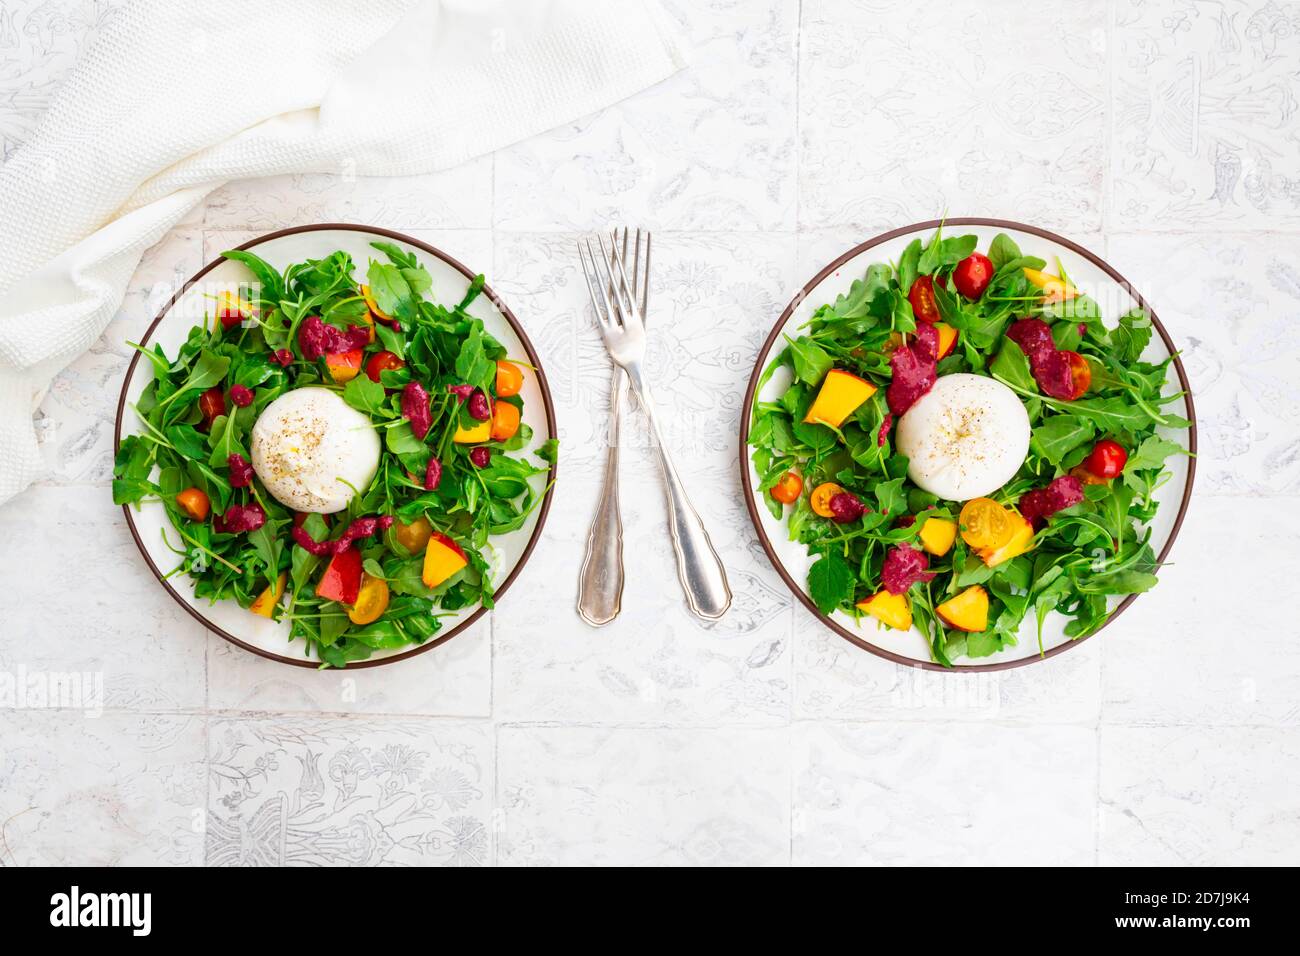 Zwei Teller vegetarischer Salat mit Obst, Gemüse und Burrata-Käse  Stockfotografie - Alamy